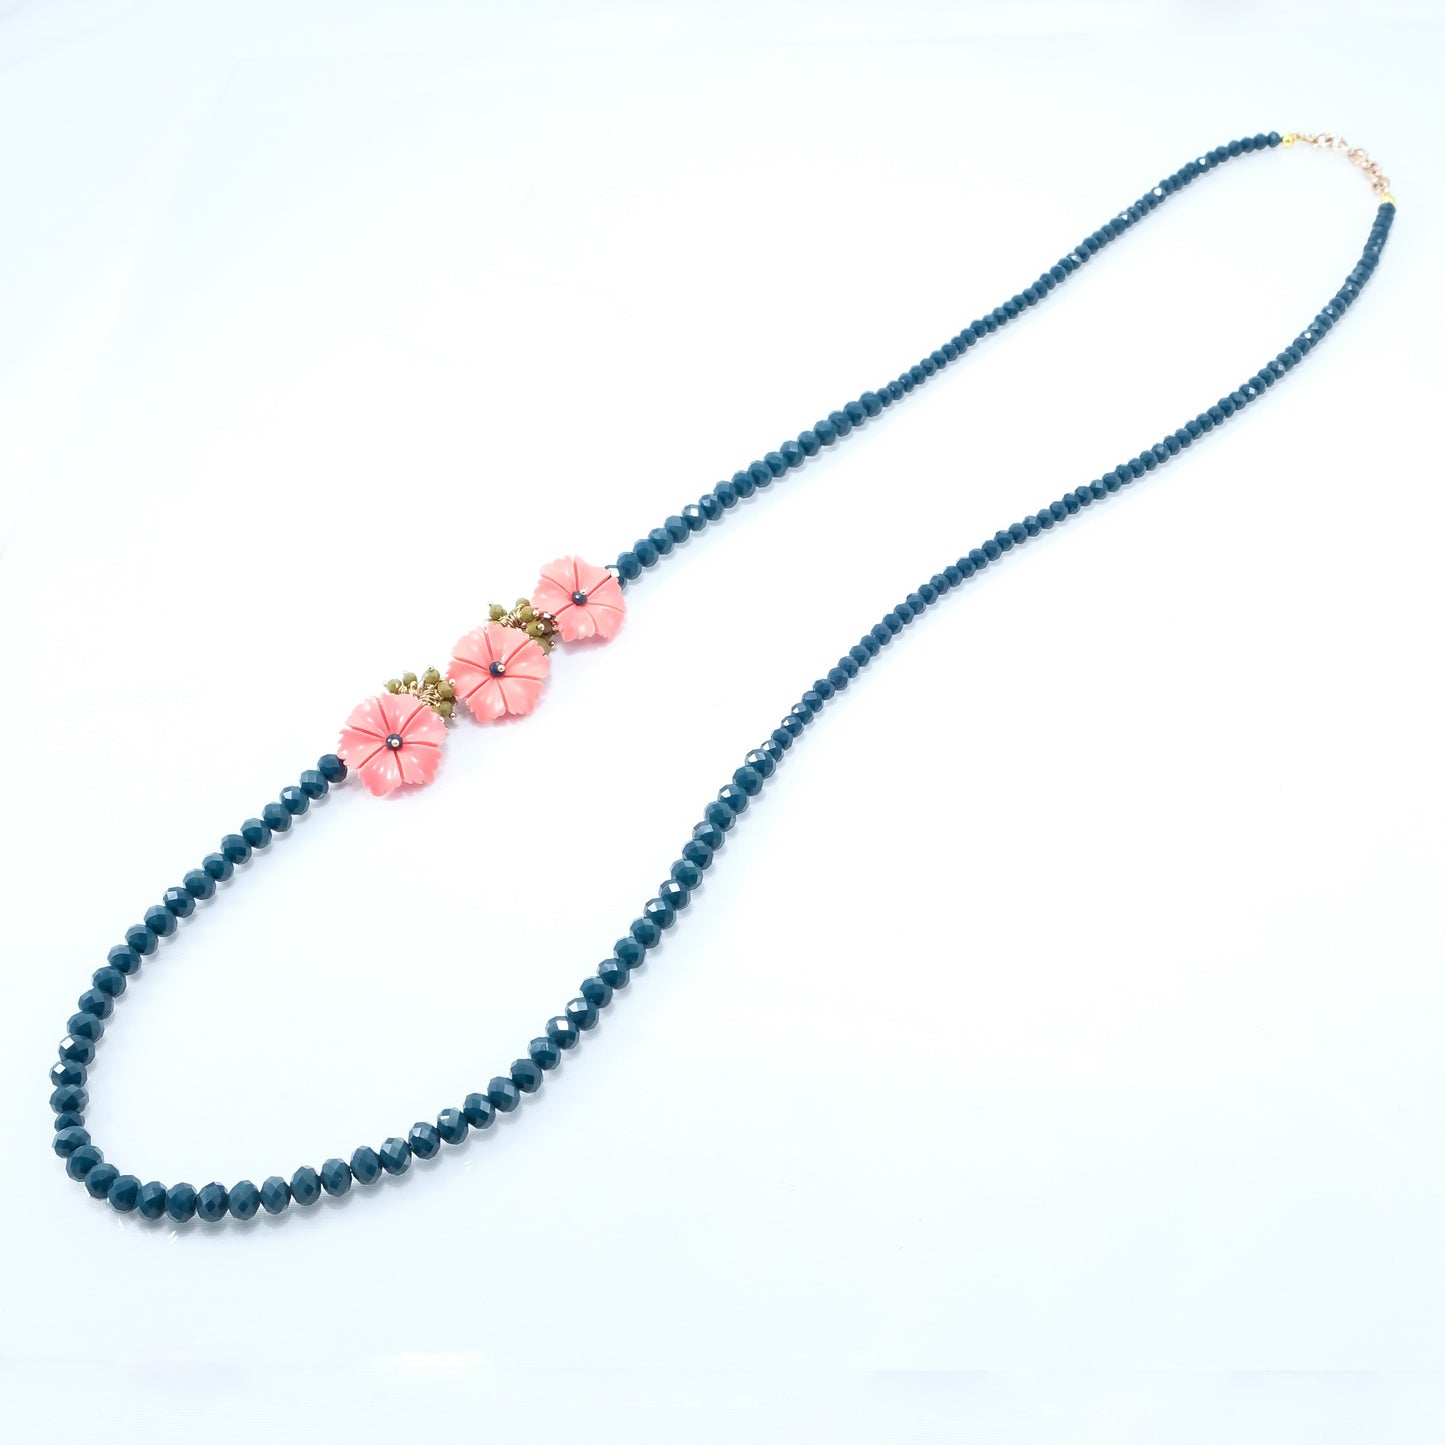 Collana I CRISTALLI .070 lunga cristalli blu cobalto con fiori rosa e ciondolini verdi,